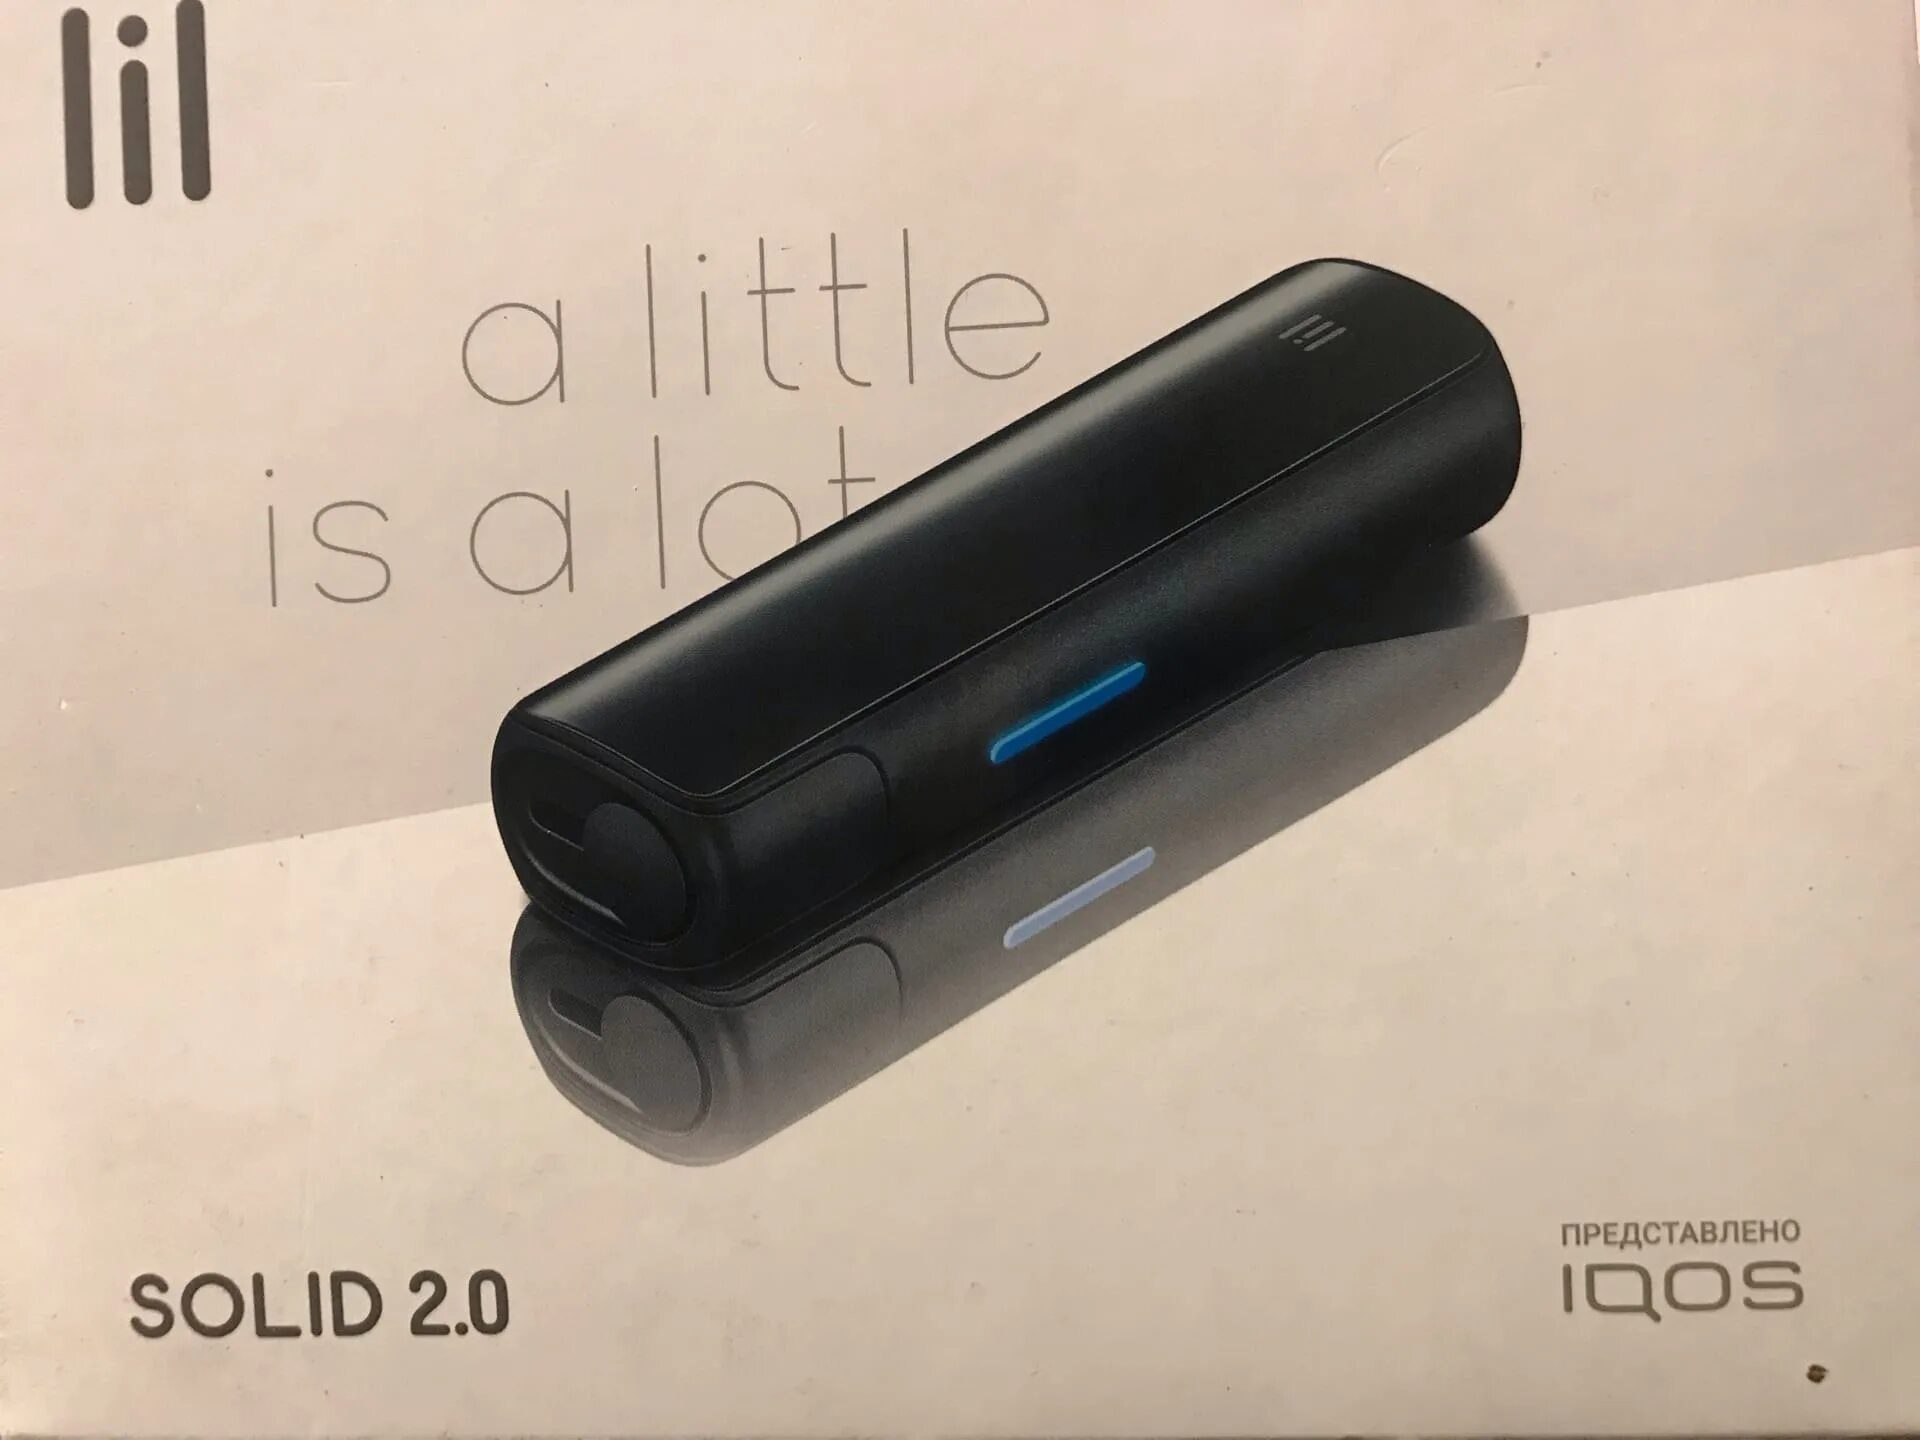 IQOS Lil Solid 2.0. Новый айкос Lil Solid. Лил Солид 2.0 цвета. Втулка Lil Solid 2. Solid 2.0 plus купить